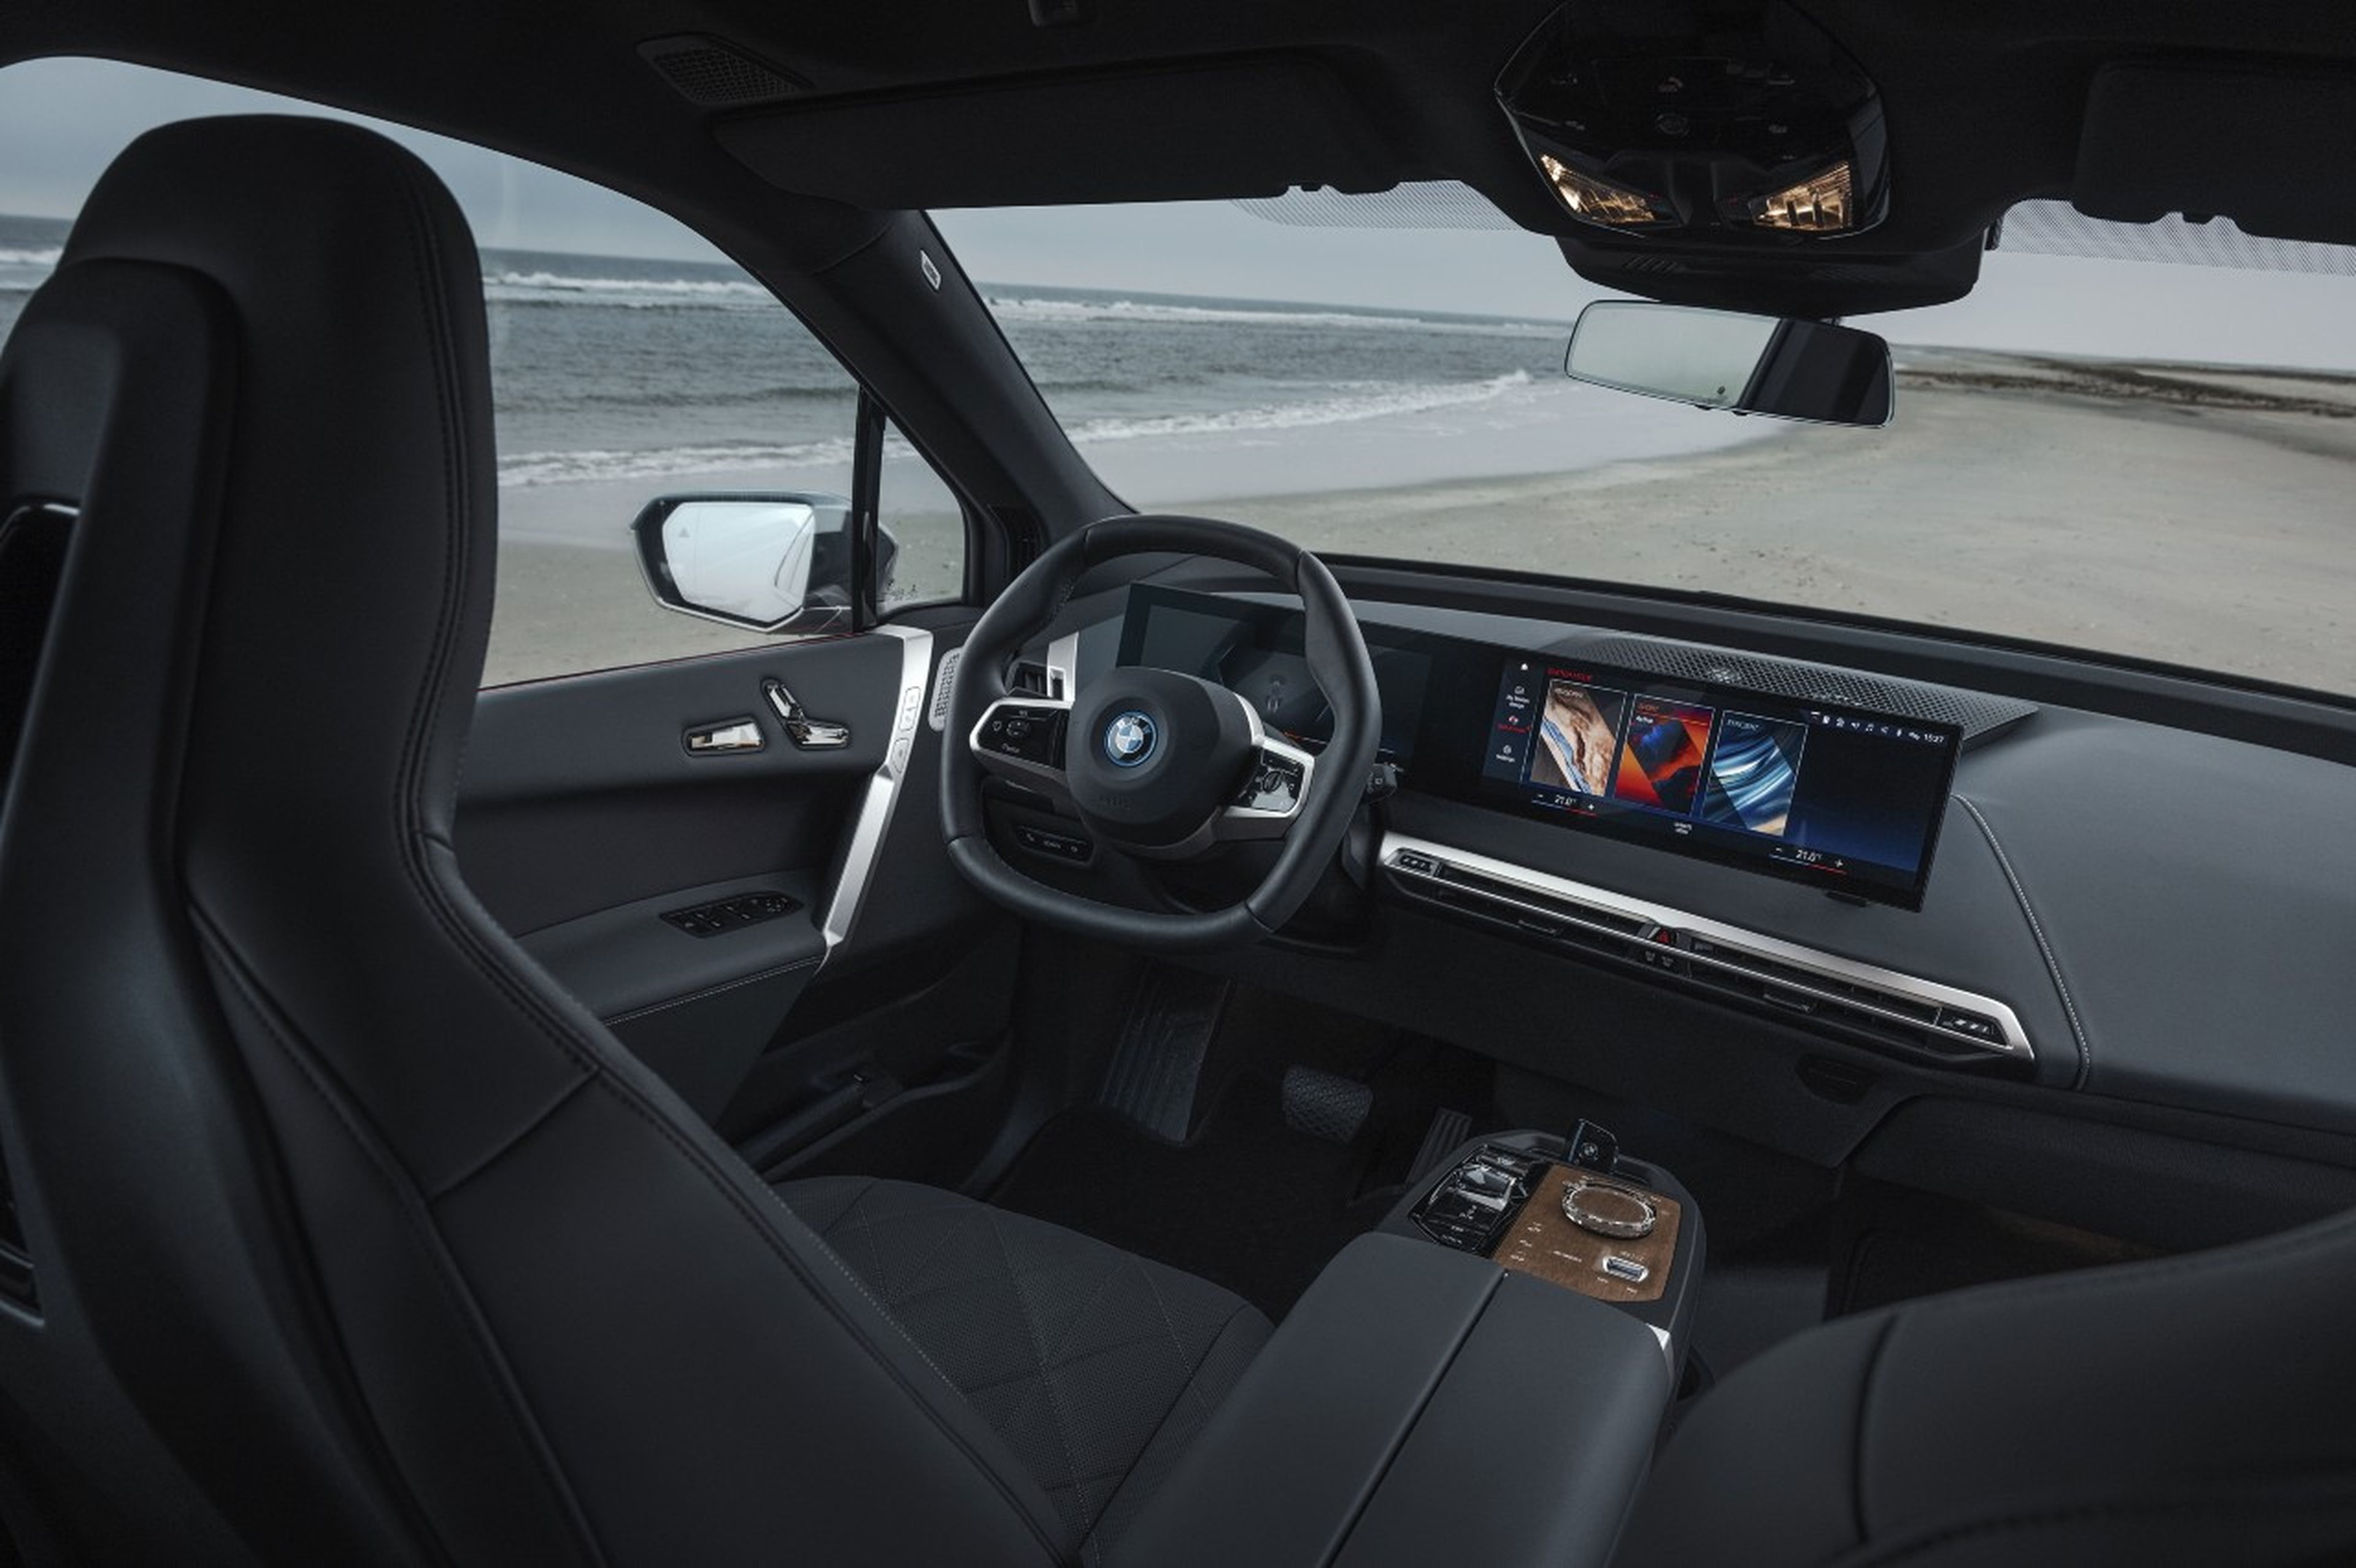 El sistema BMW iDrive permite una interacción muy intuitiva entre el conductor y el coche